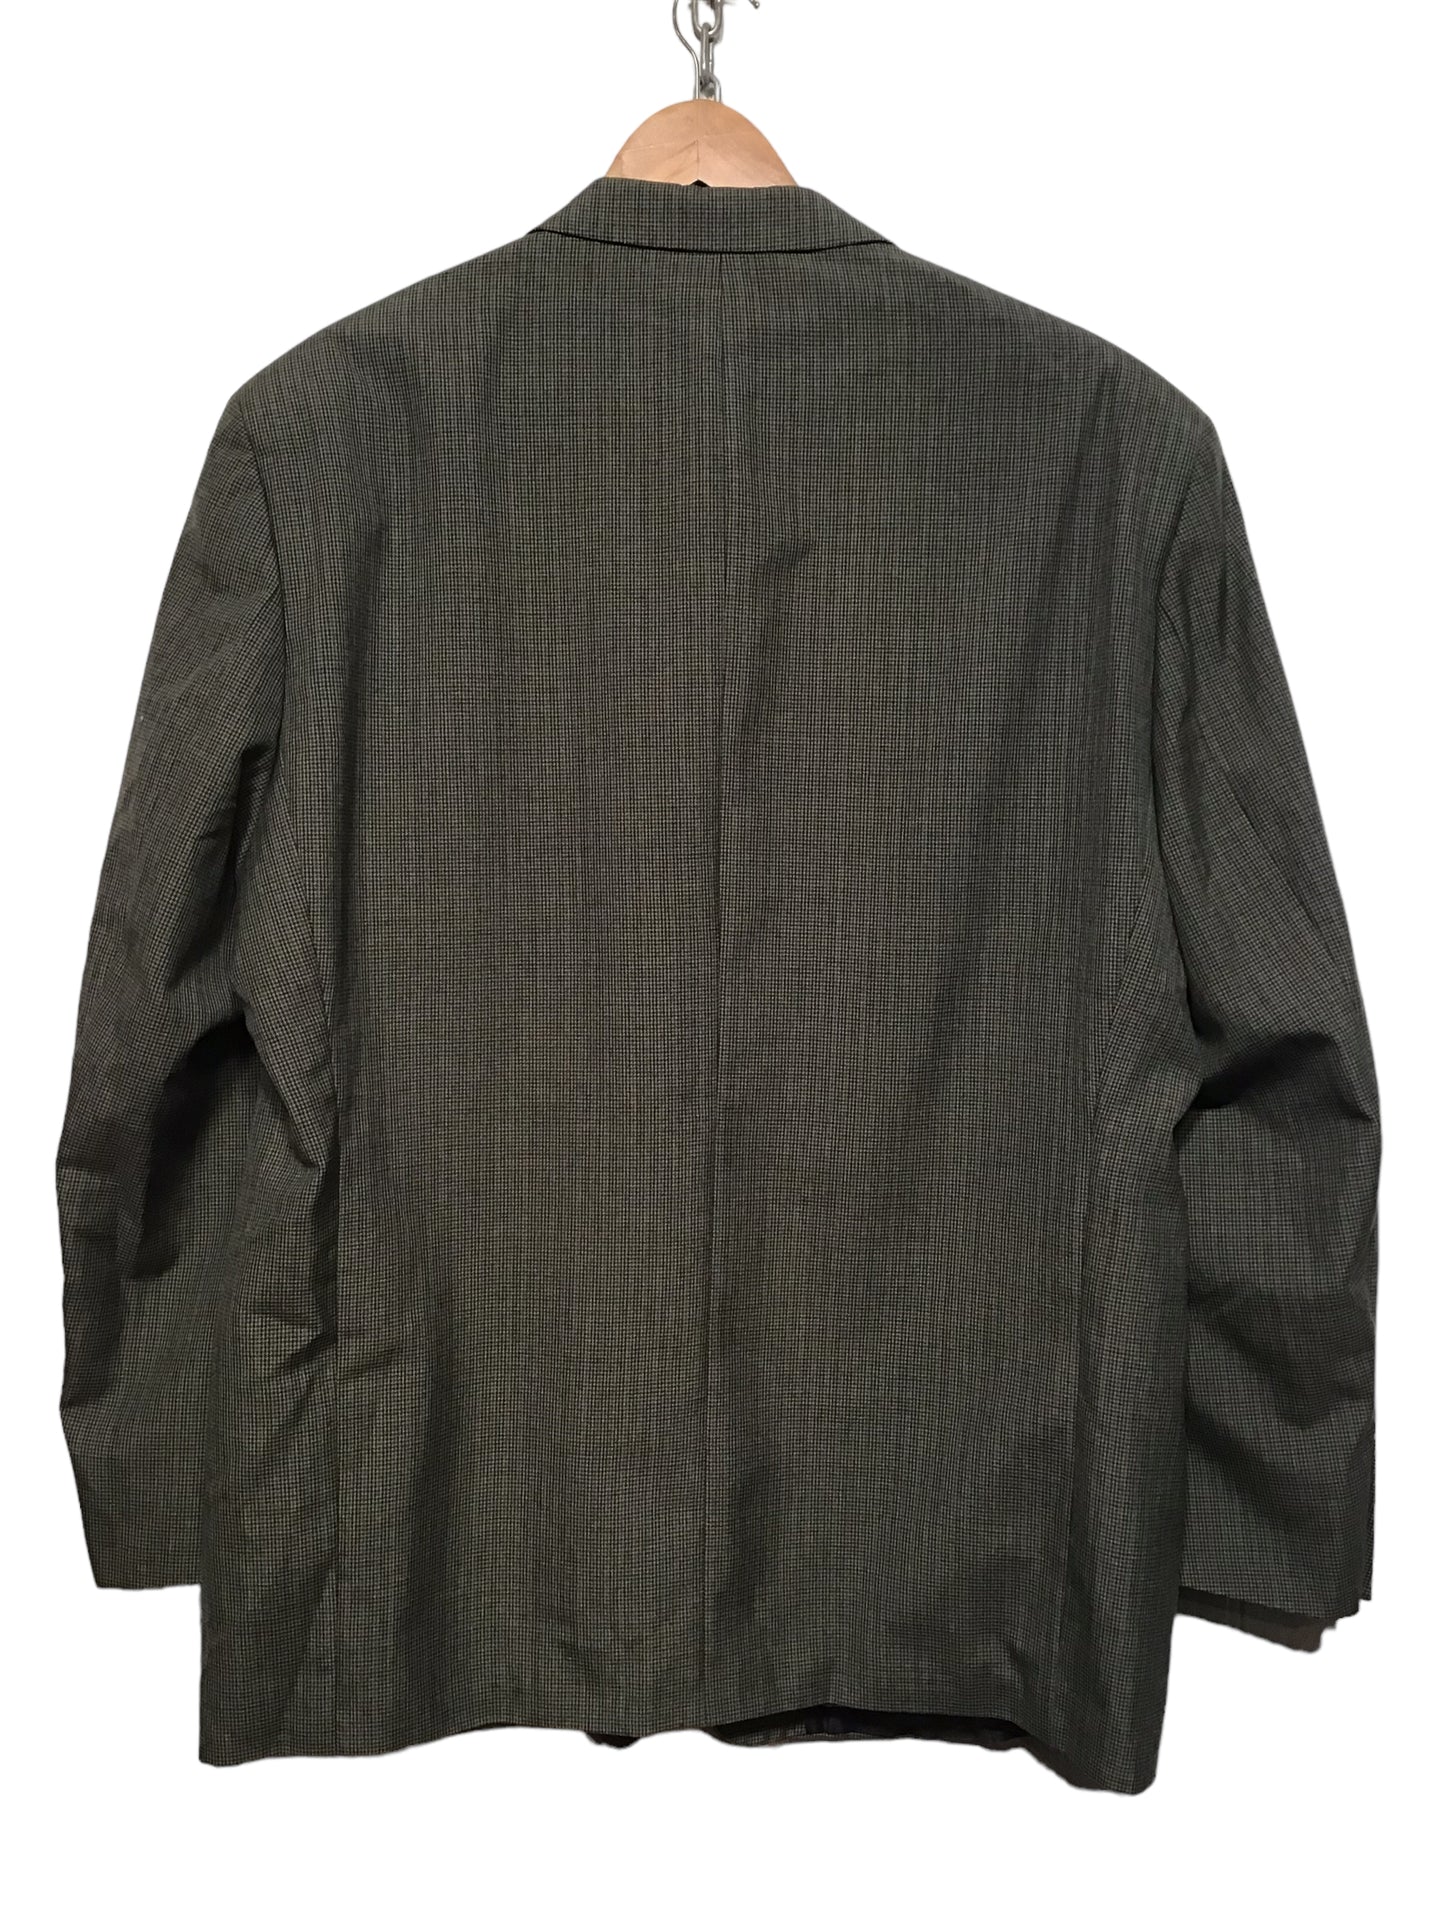 Pierro Cini Checkered Blazer (Size XXL)